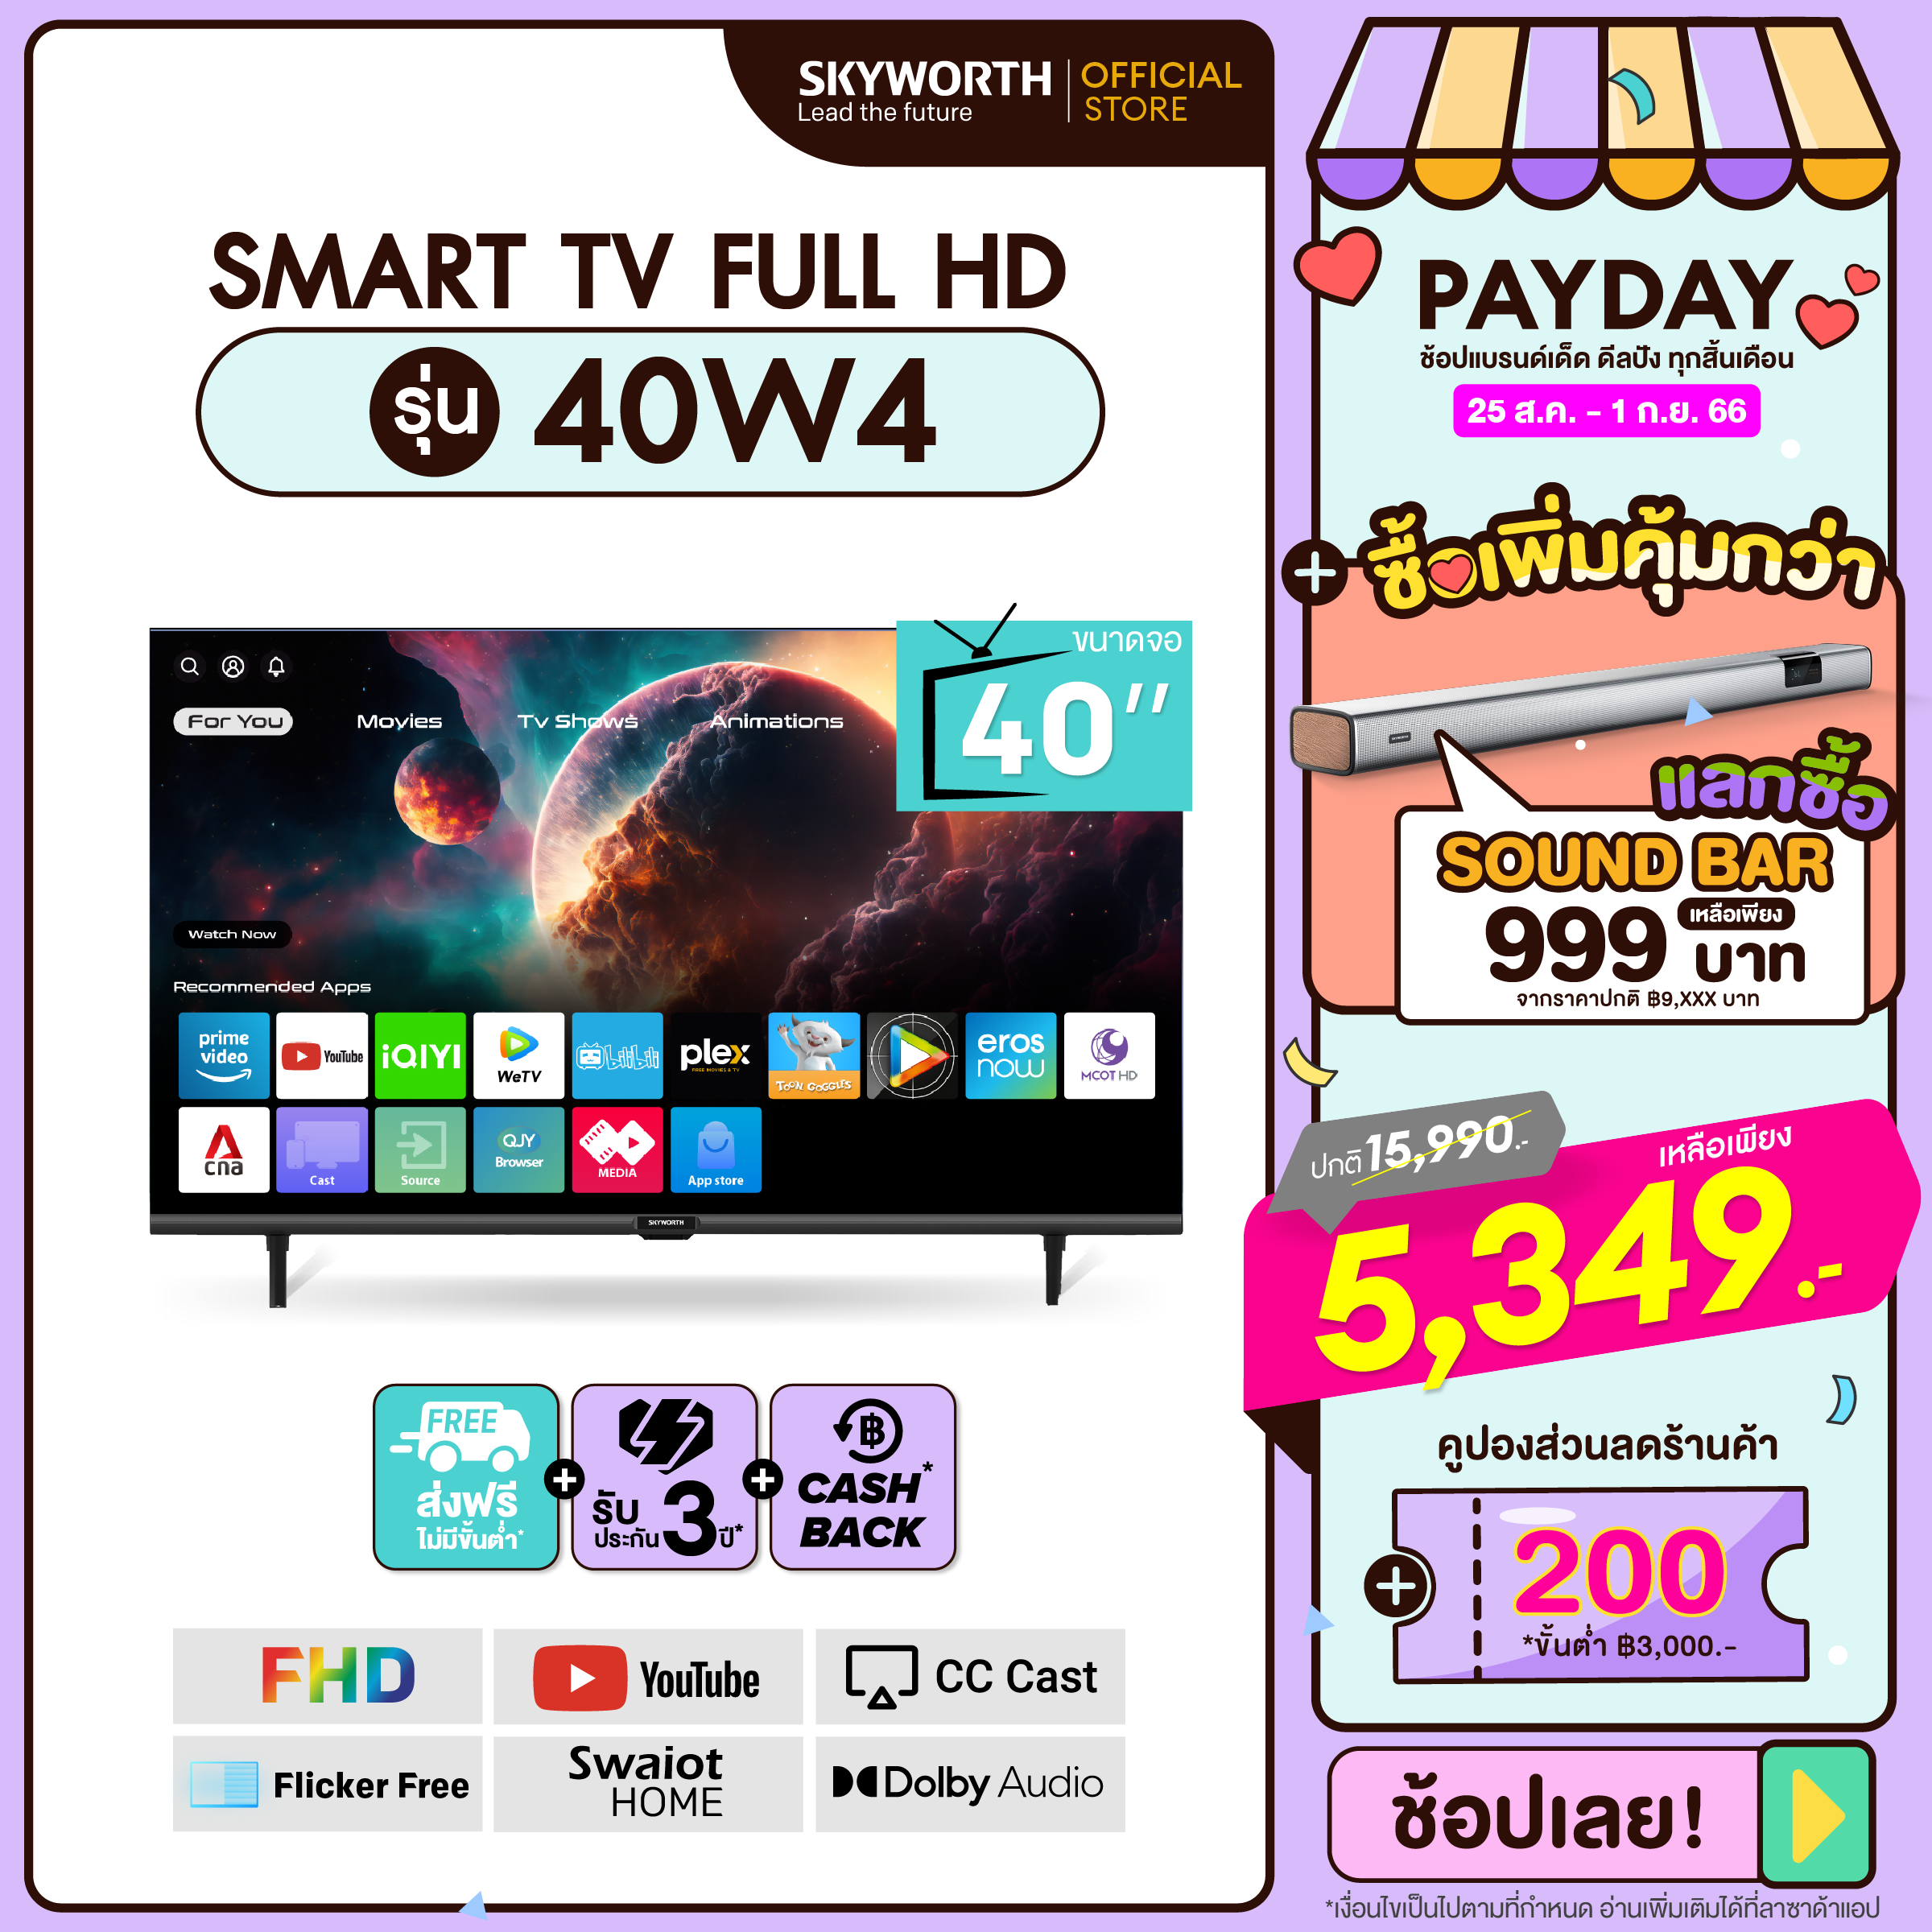 โปรโมชั่น Flash Sale : [รับประกัน3ปี+ส่งฟรี+เงินคืน] สมาร์ททีวี SKYWORTH 40 นิ้ว Smart TV รุ่น 40W4 คมชัด Full HD (1920x1080 PX) รองรับ WIFI YouTube Browser